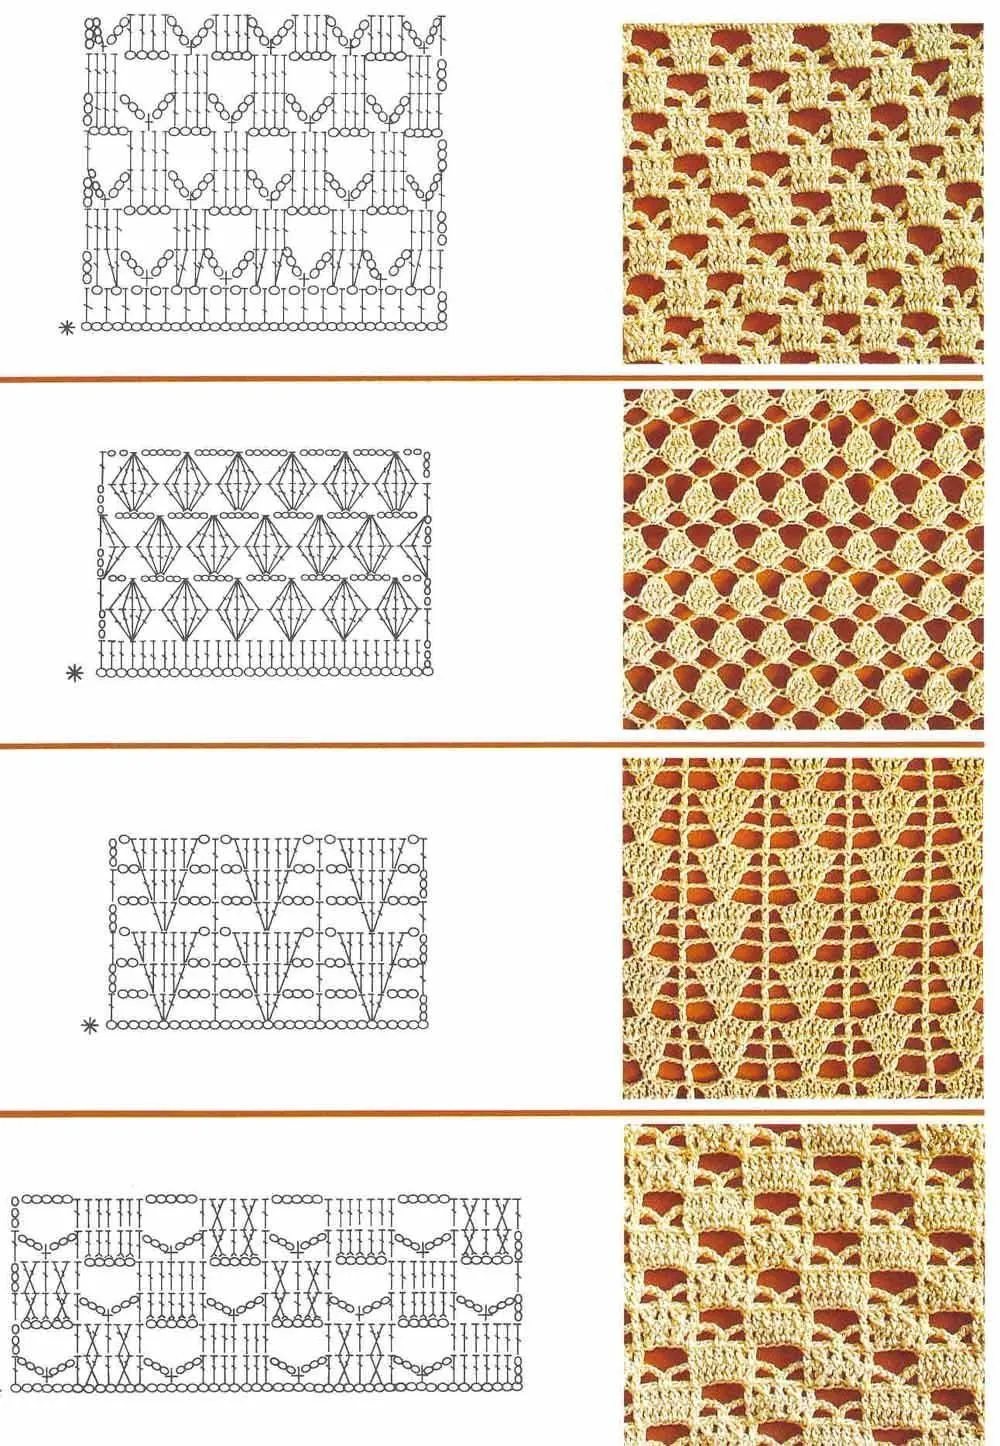 Mis tejidos en crochet y dos agujas (palitos): Patrones en Crochet (